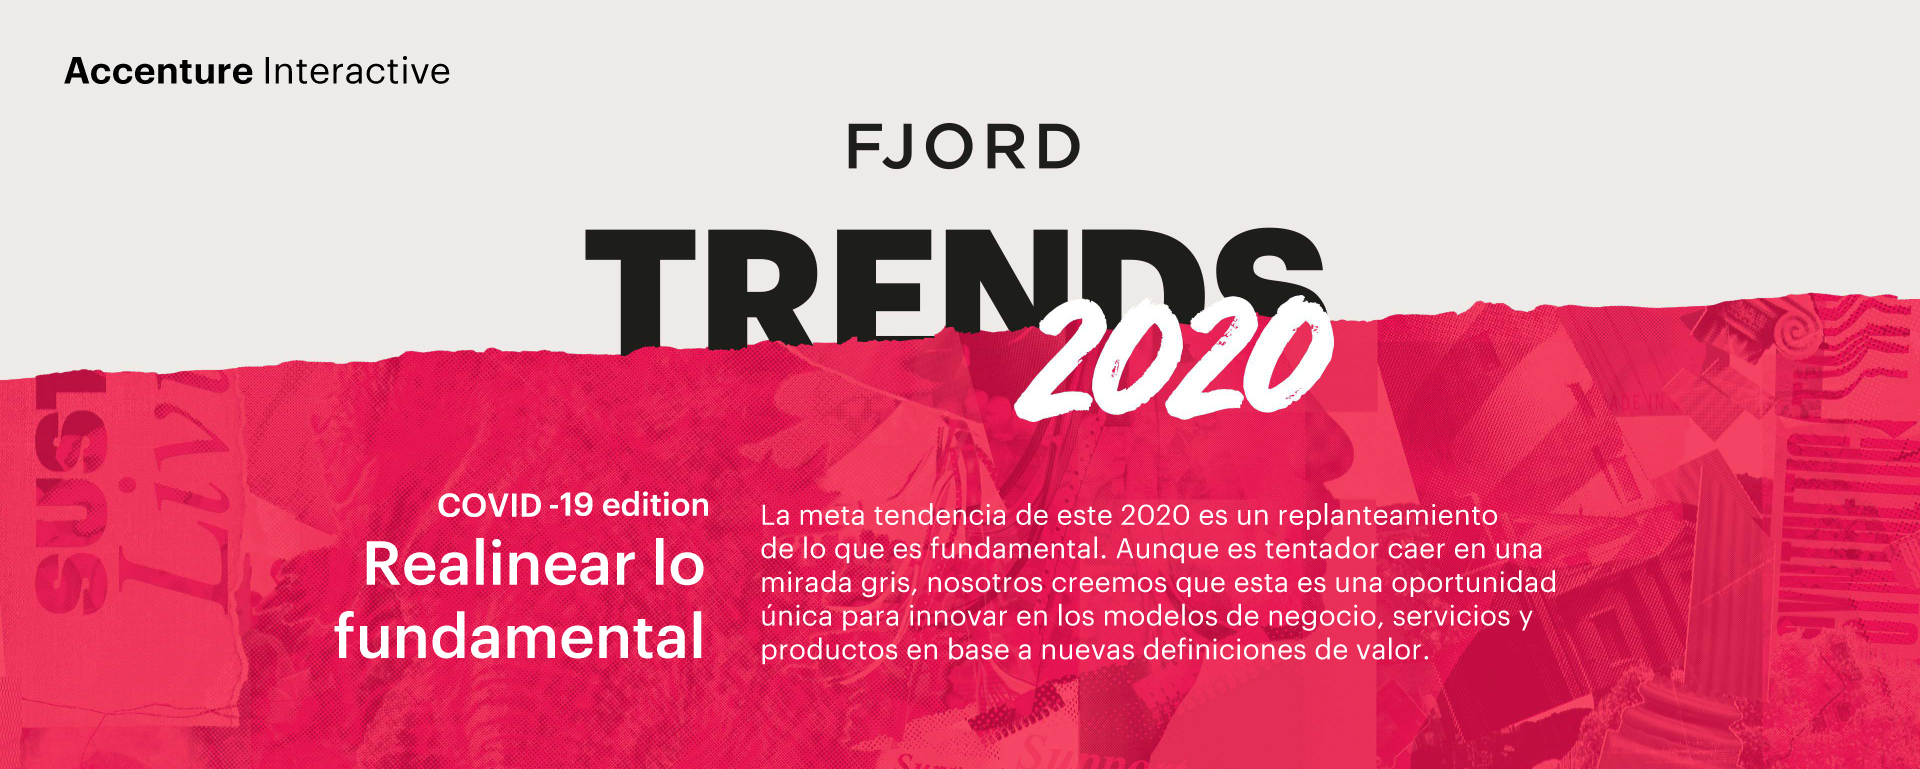 Accenture_Fjord Trends